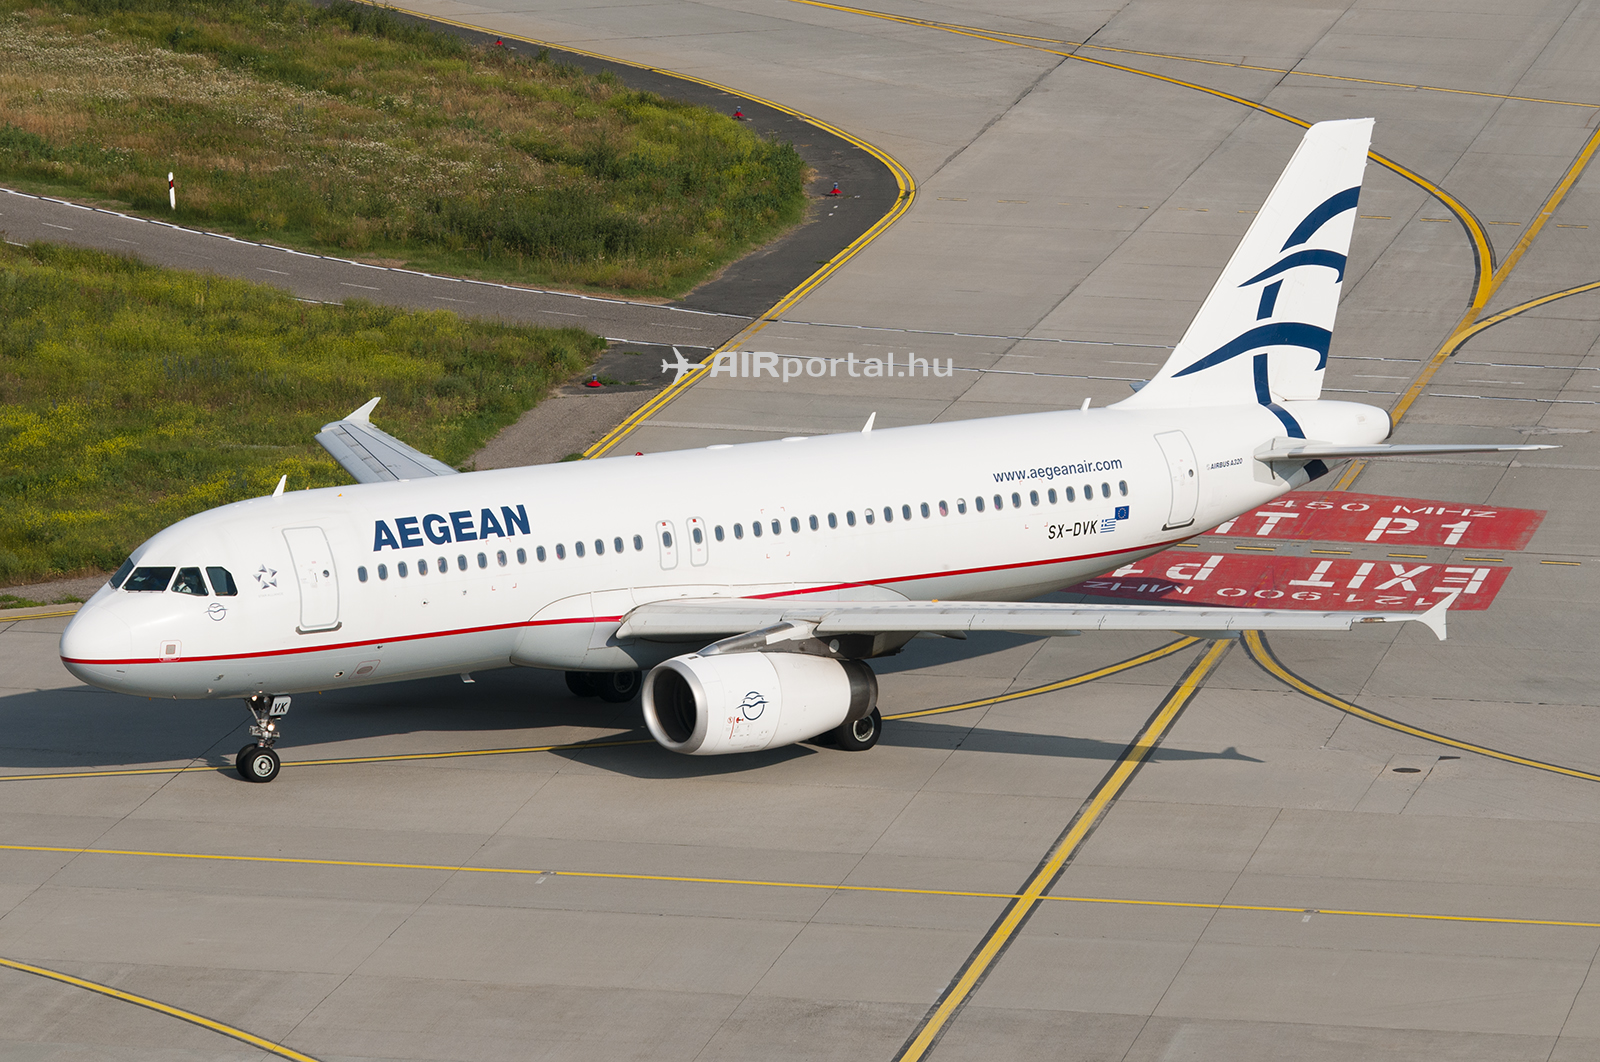 Az Aegean Airlines Airbus A320 típusú repülőgépe a Liszt Ferenc repülőtéren. (Fotó: AIRportal.hu) | © AIRportal.hu